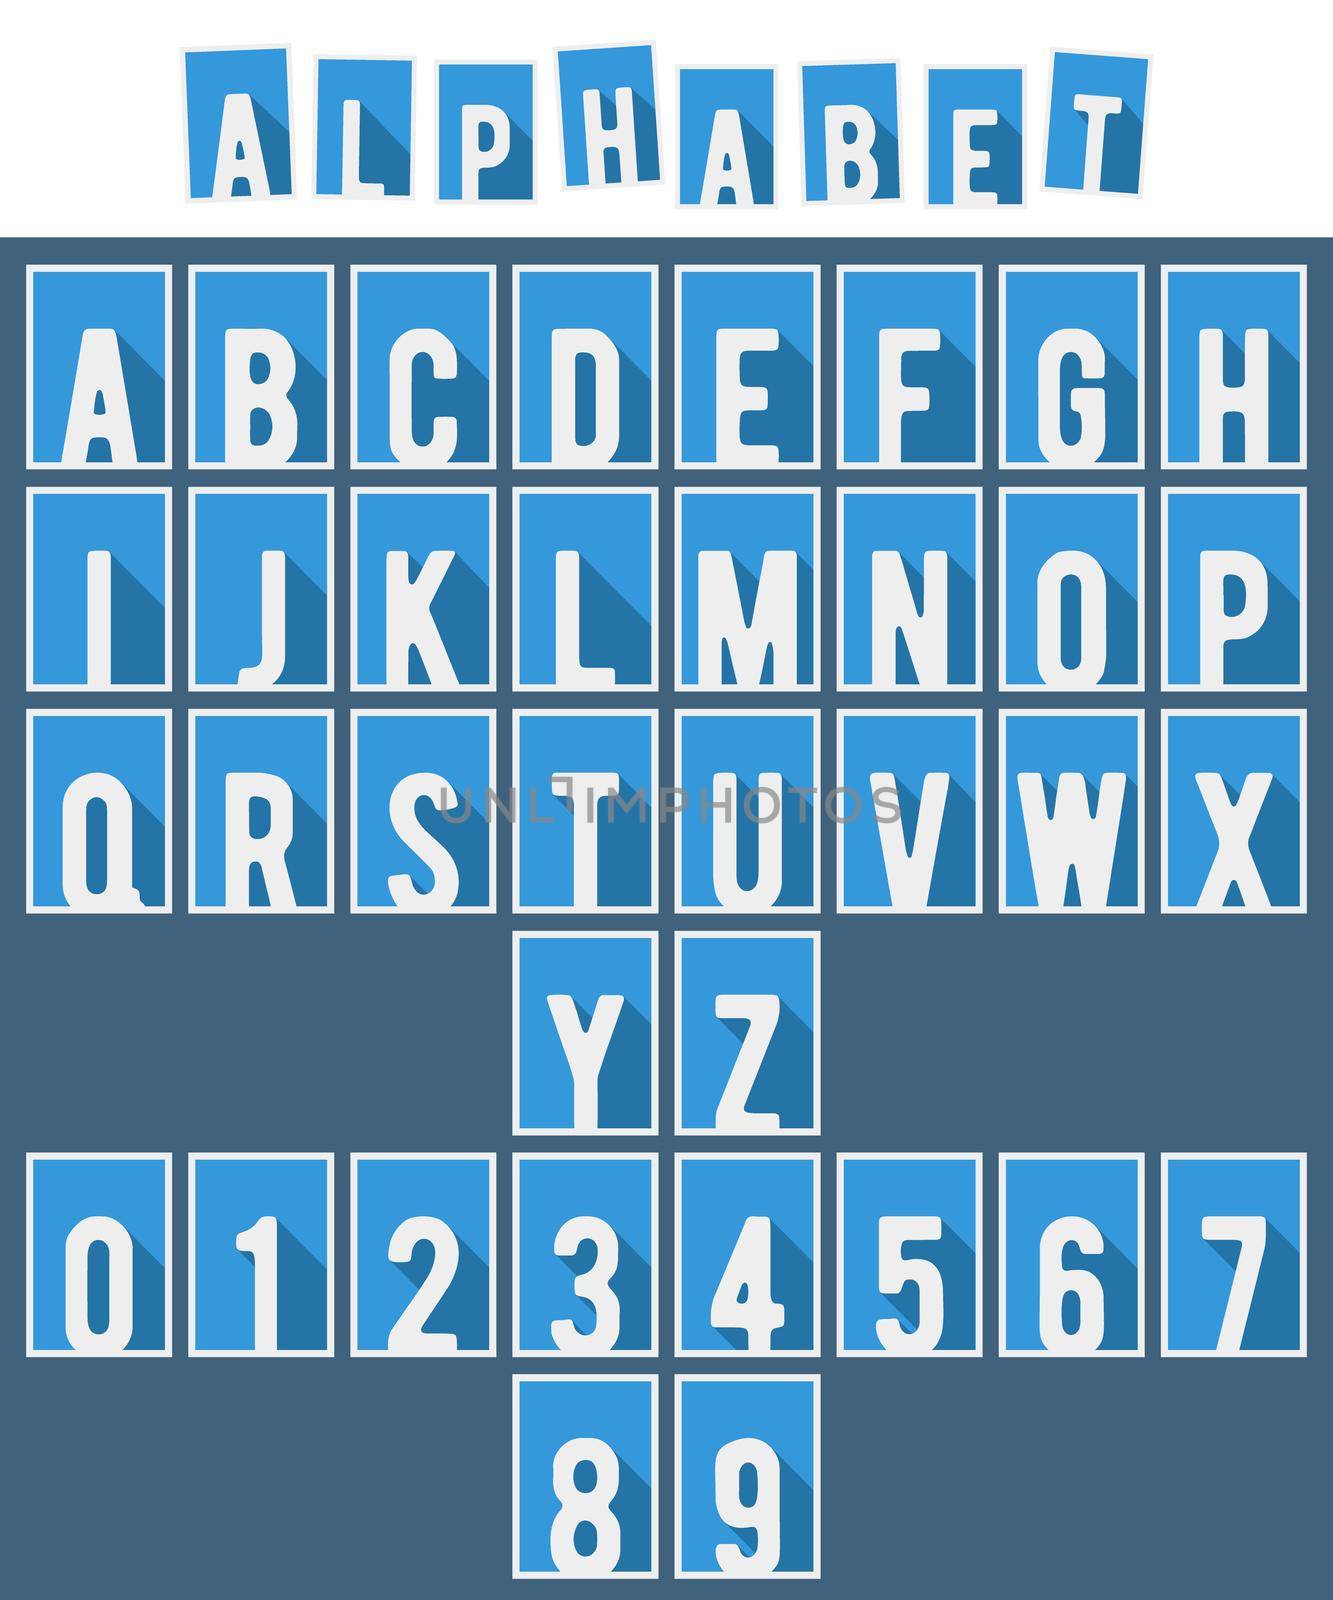 Alphabet flat font template by Bobnevv